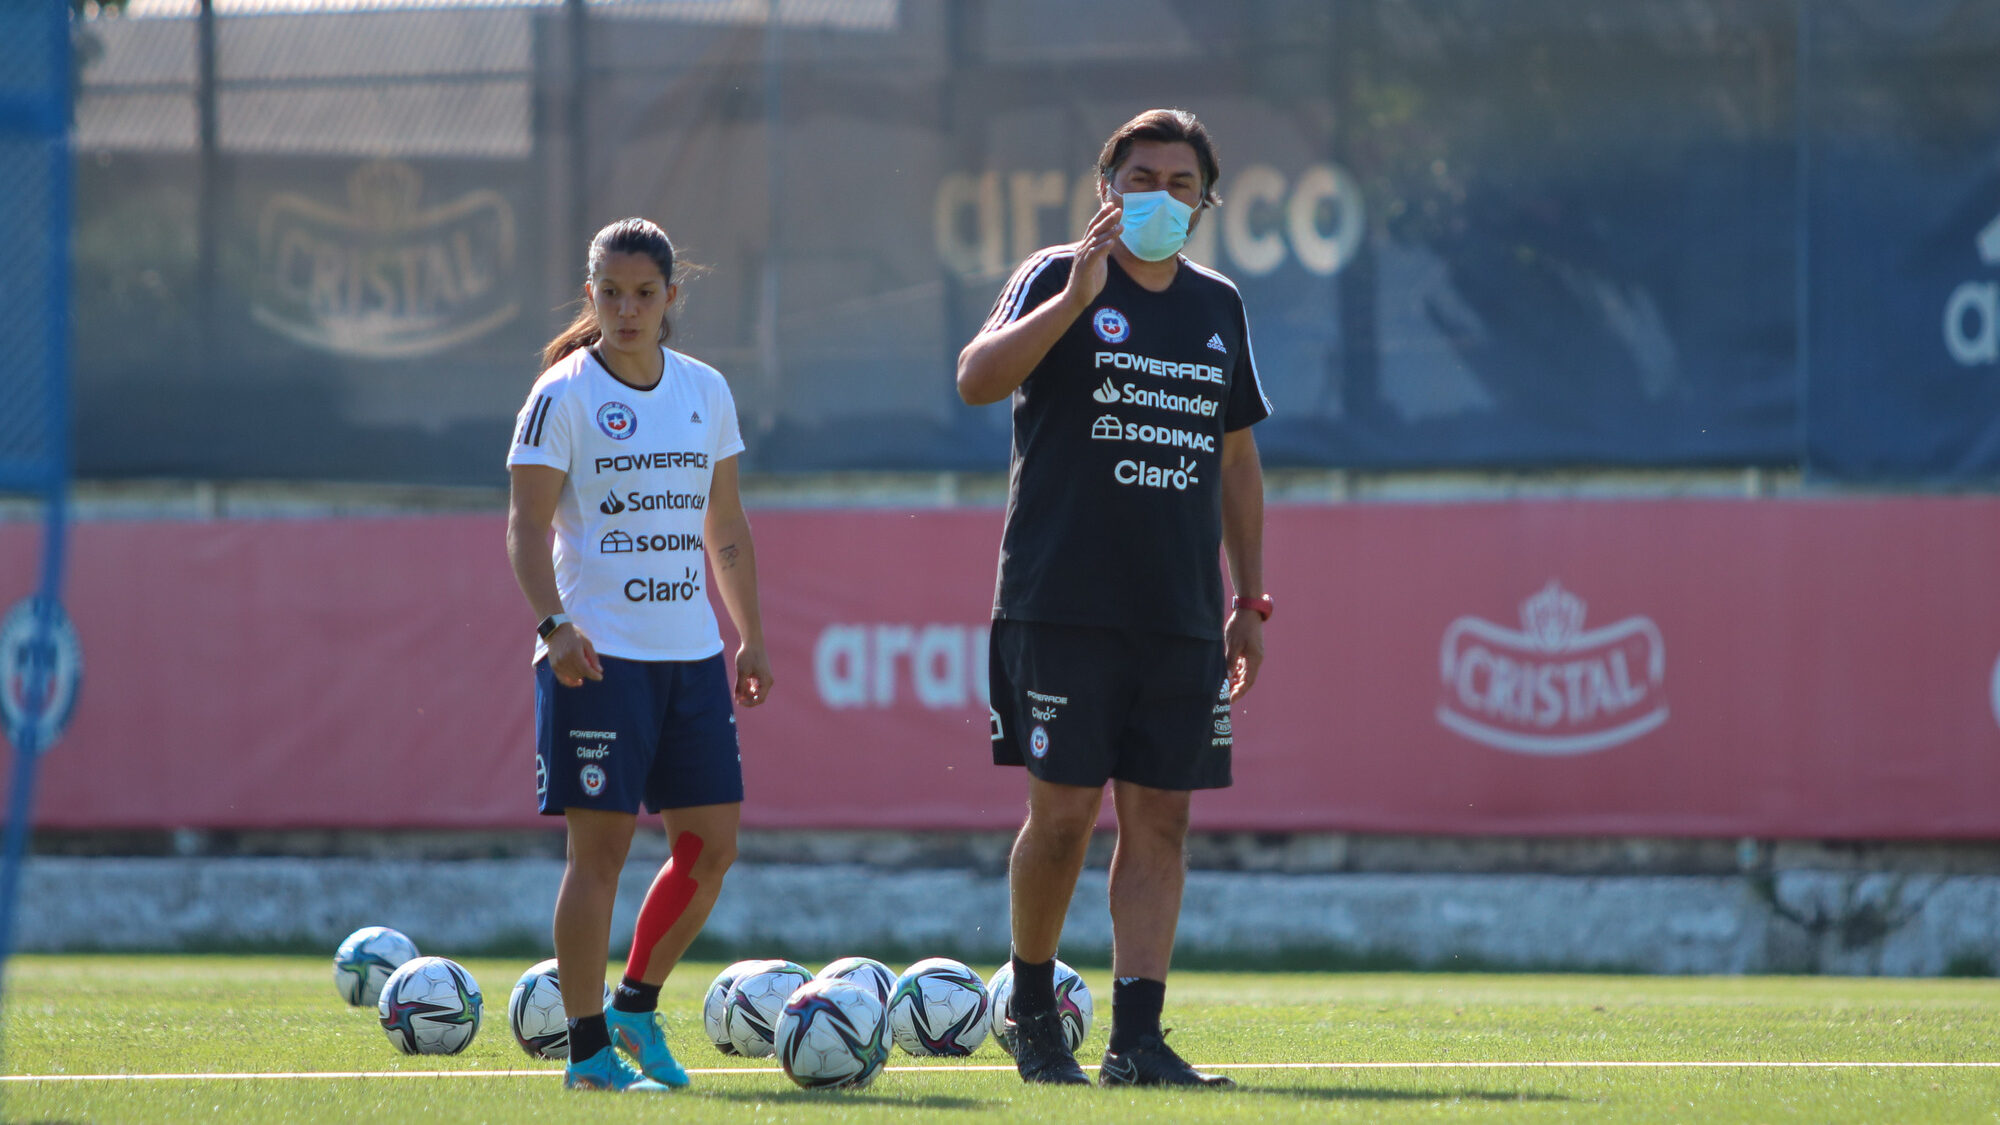 José Letelier y la próxima Copa América: “Estamos con la tranquilidad justa, no tenemos que obsesionarnos con eso, sino que prepararnos bien”